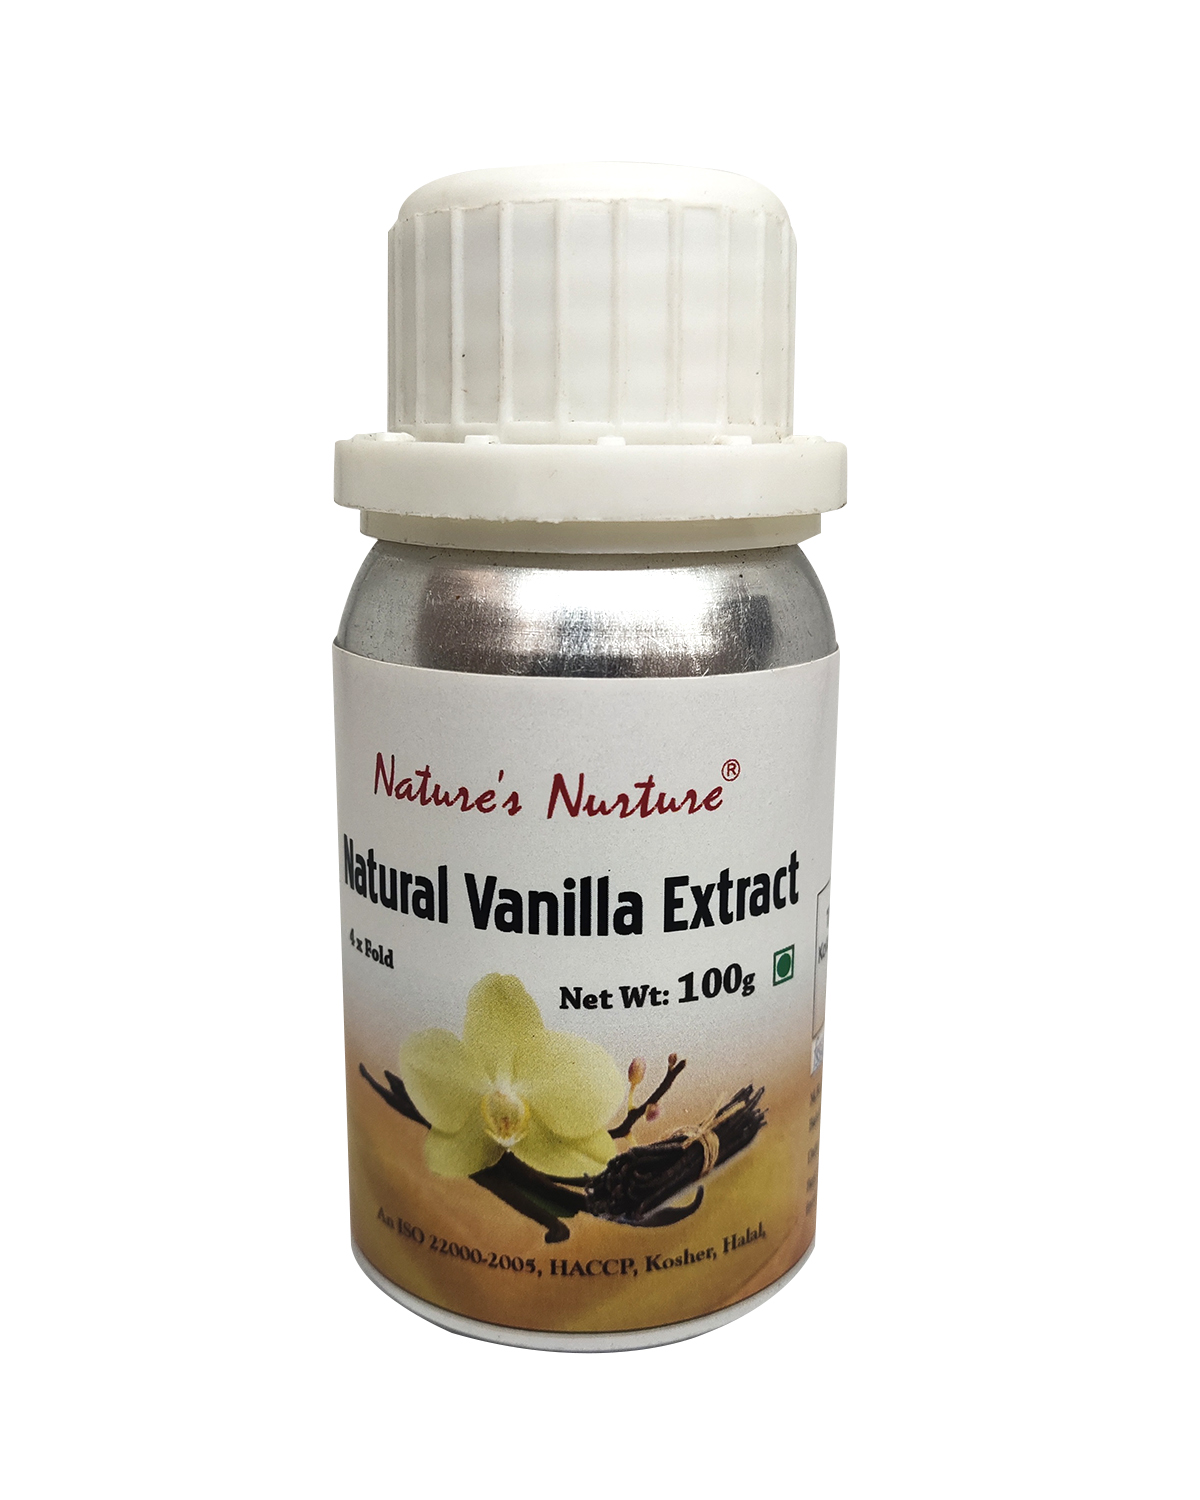 NaturesNurture Vanilla Extract 4 fold 100gm 1